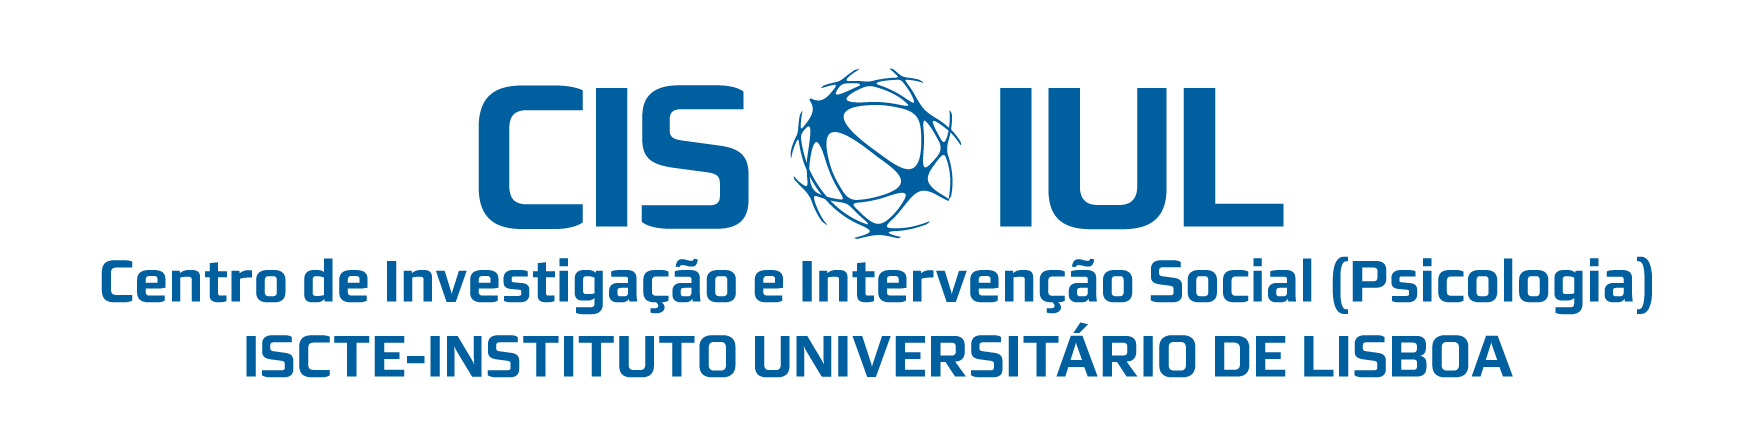 CIS-IUL - Centro de Investigação e Intervenção Social do Instituto Universitário de Lisboa